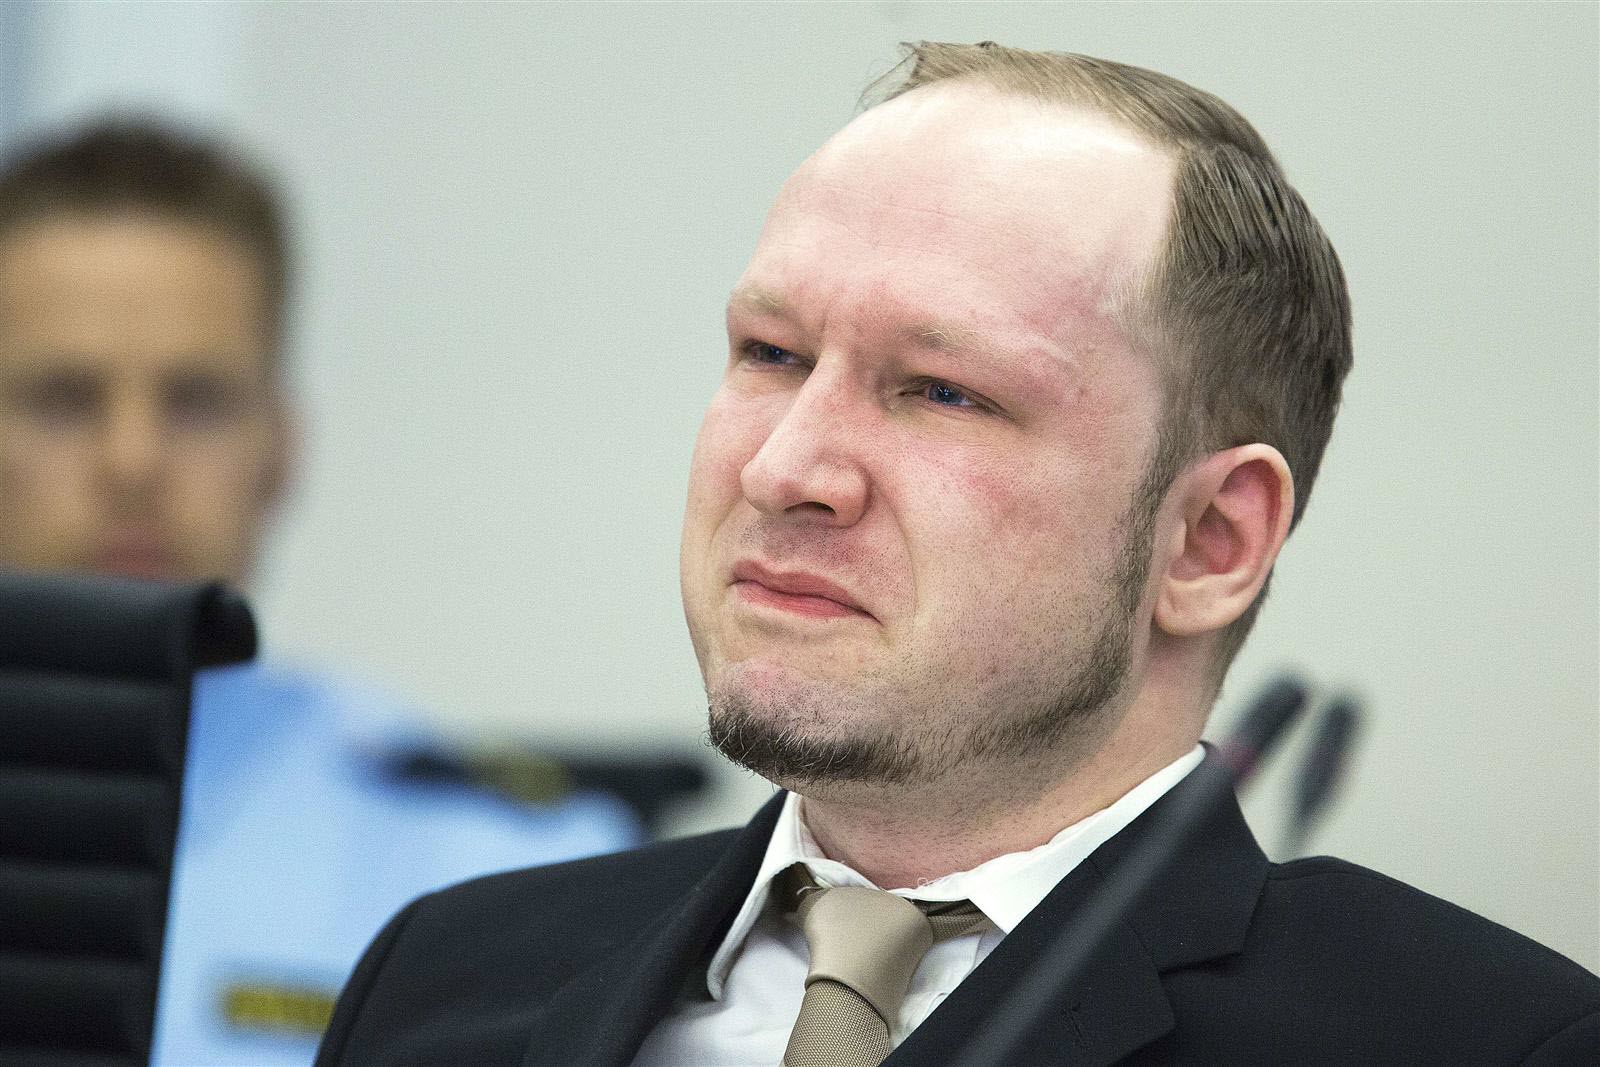 anders-behring-breivik-avait-seul-tue-77-personnes-en-2011-en-norvege-photo-afp-1496928652.jpg